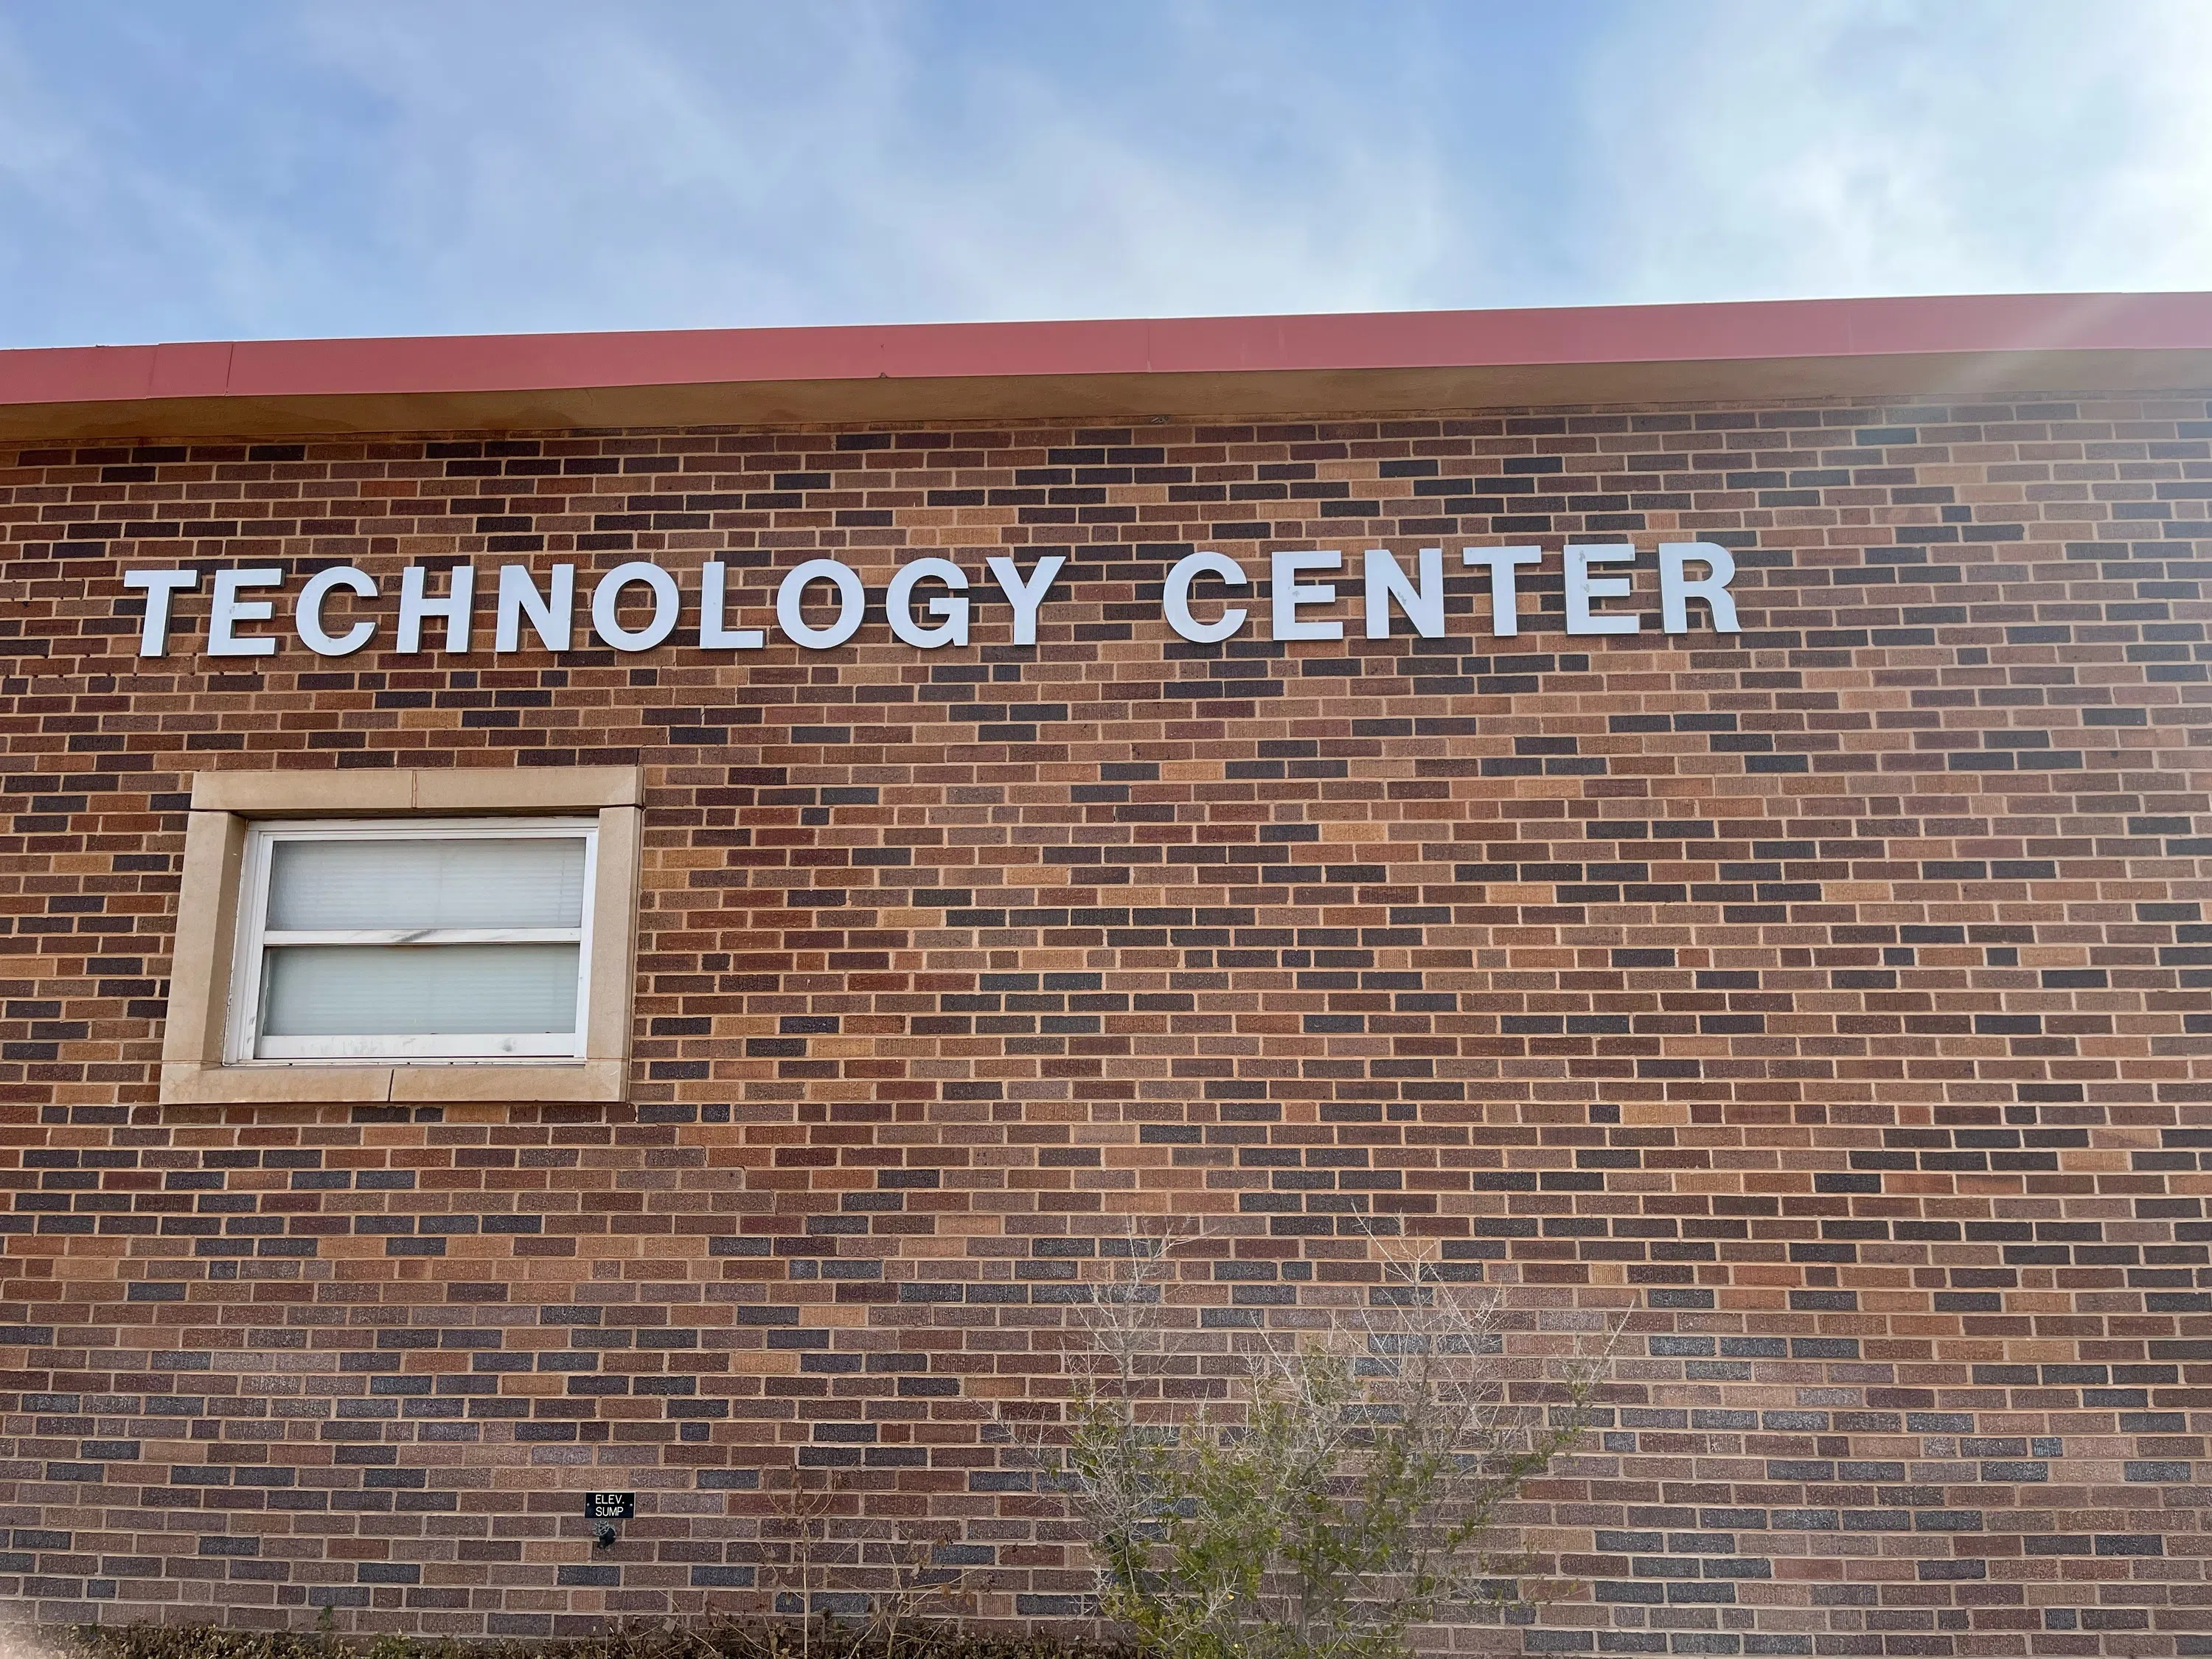 Technology Center